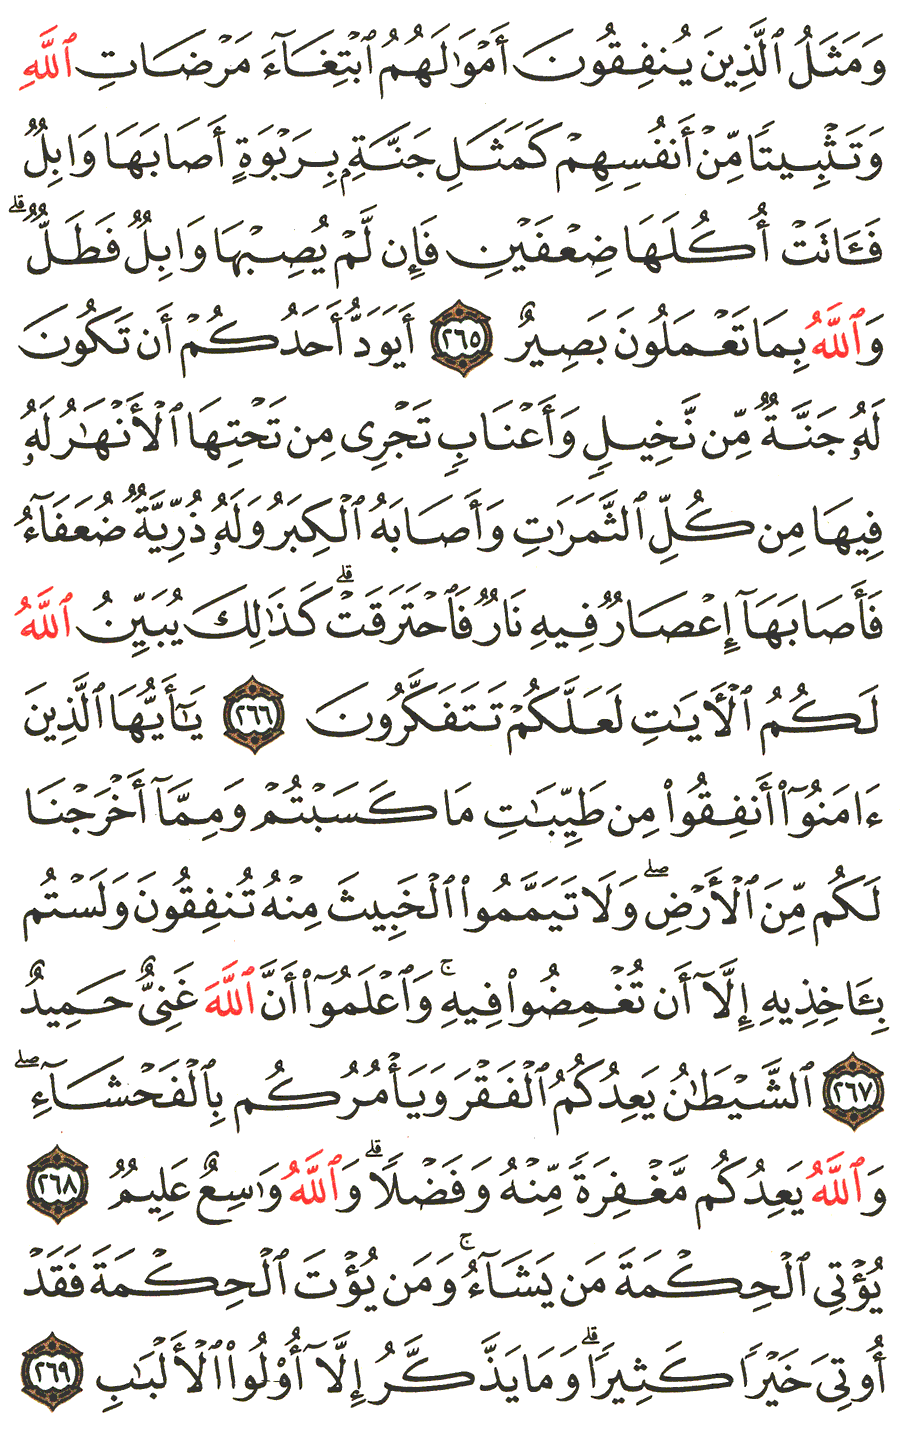 الصفحة 45 من القرآن الكريم